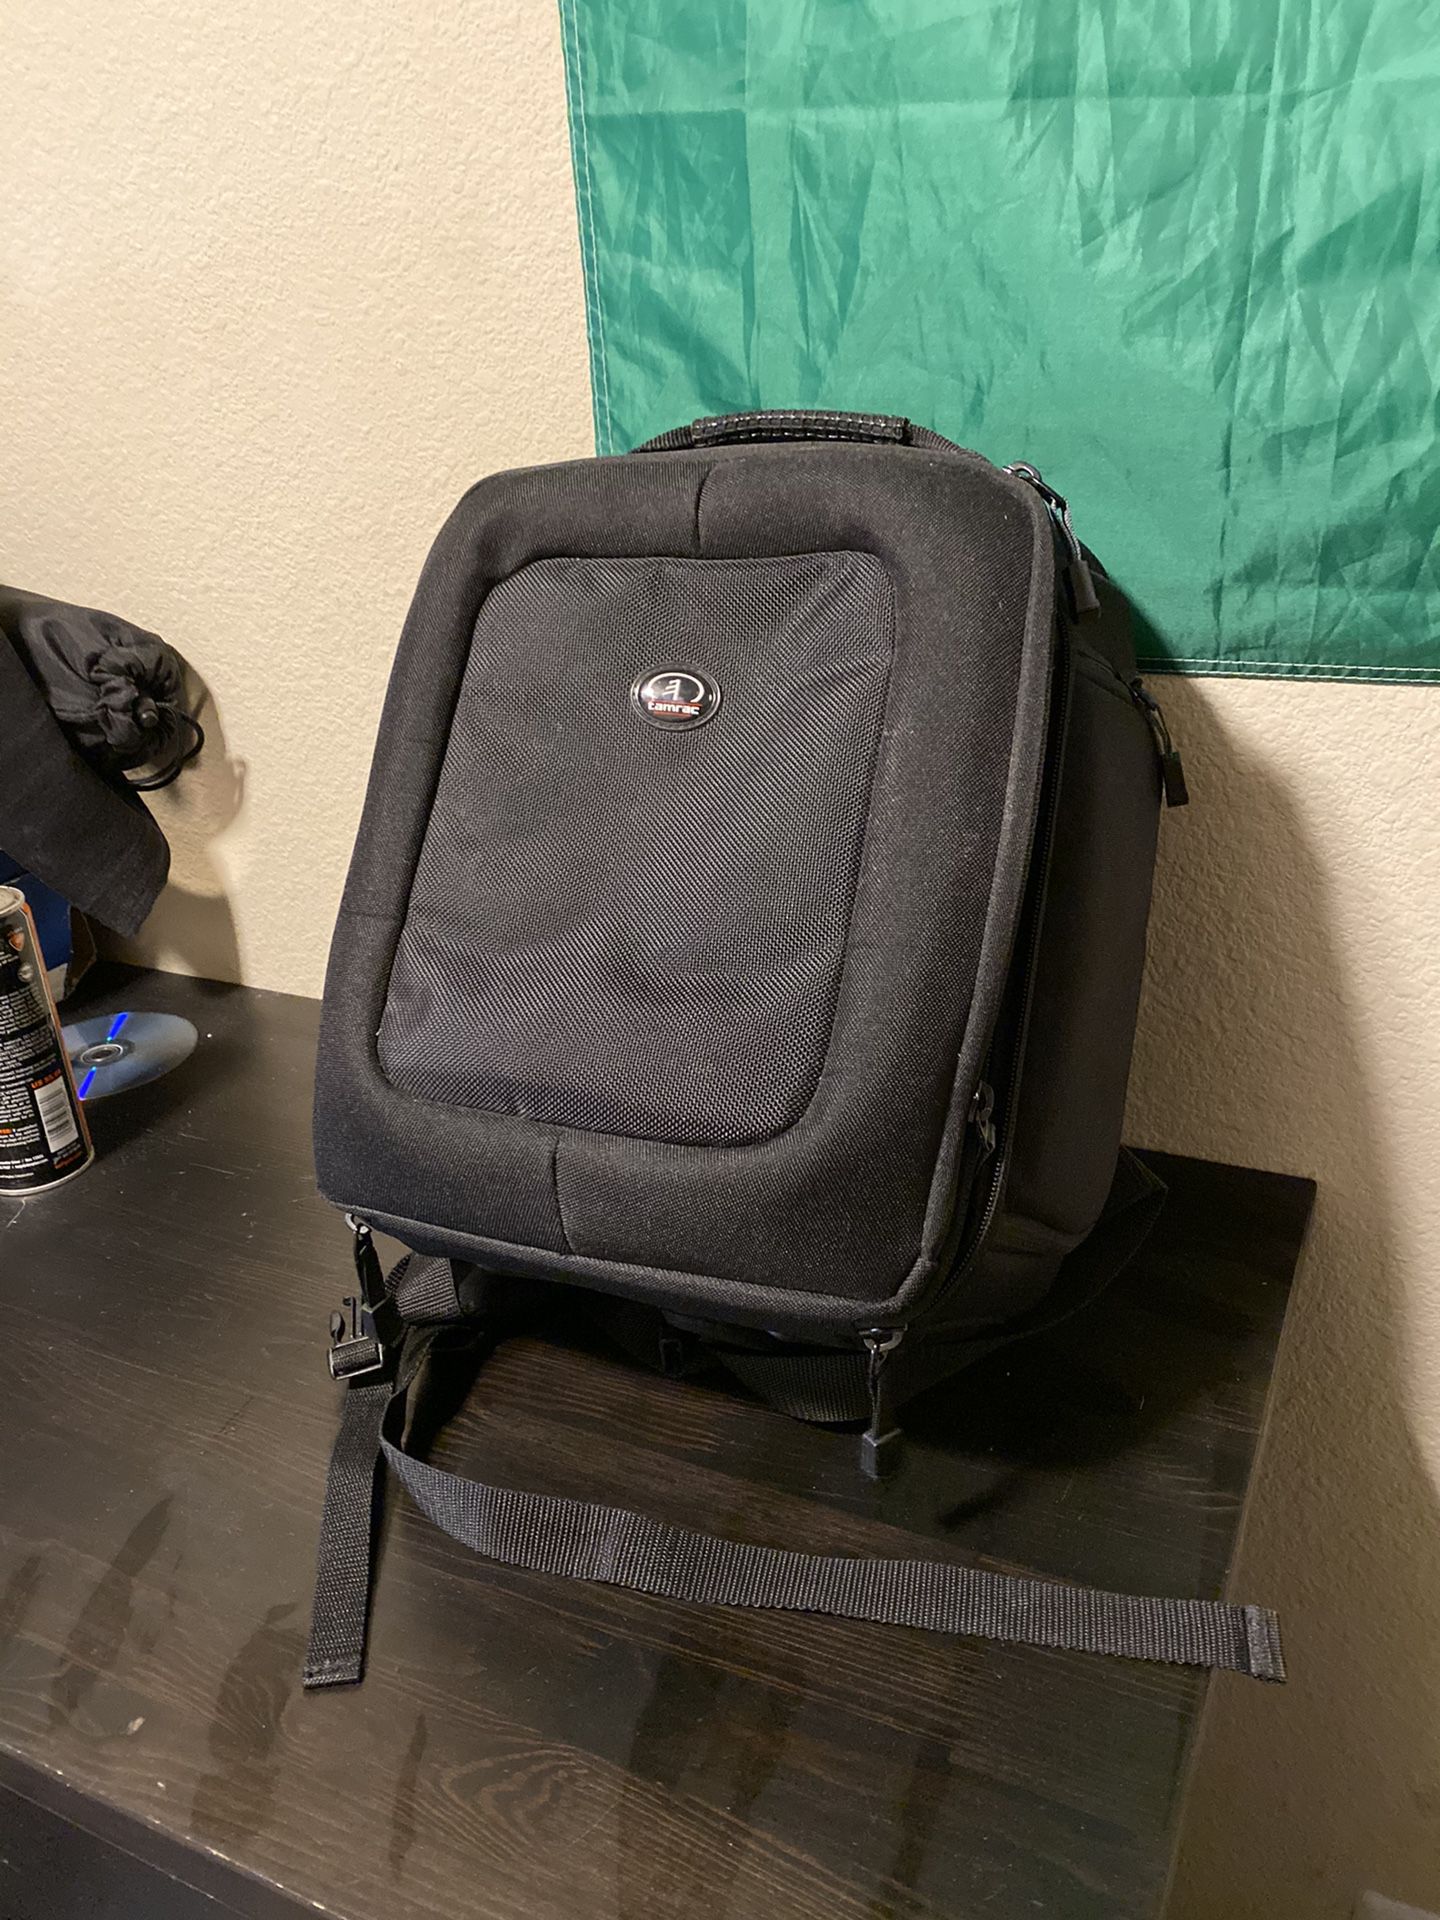 Camera backpack DSLR